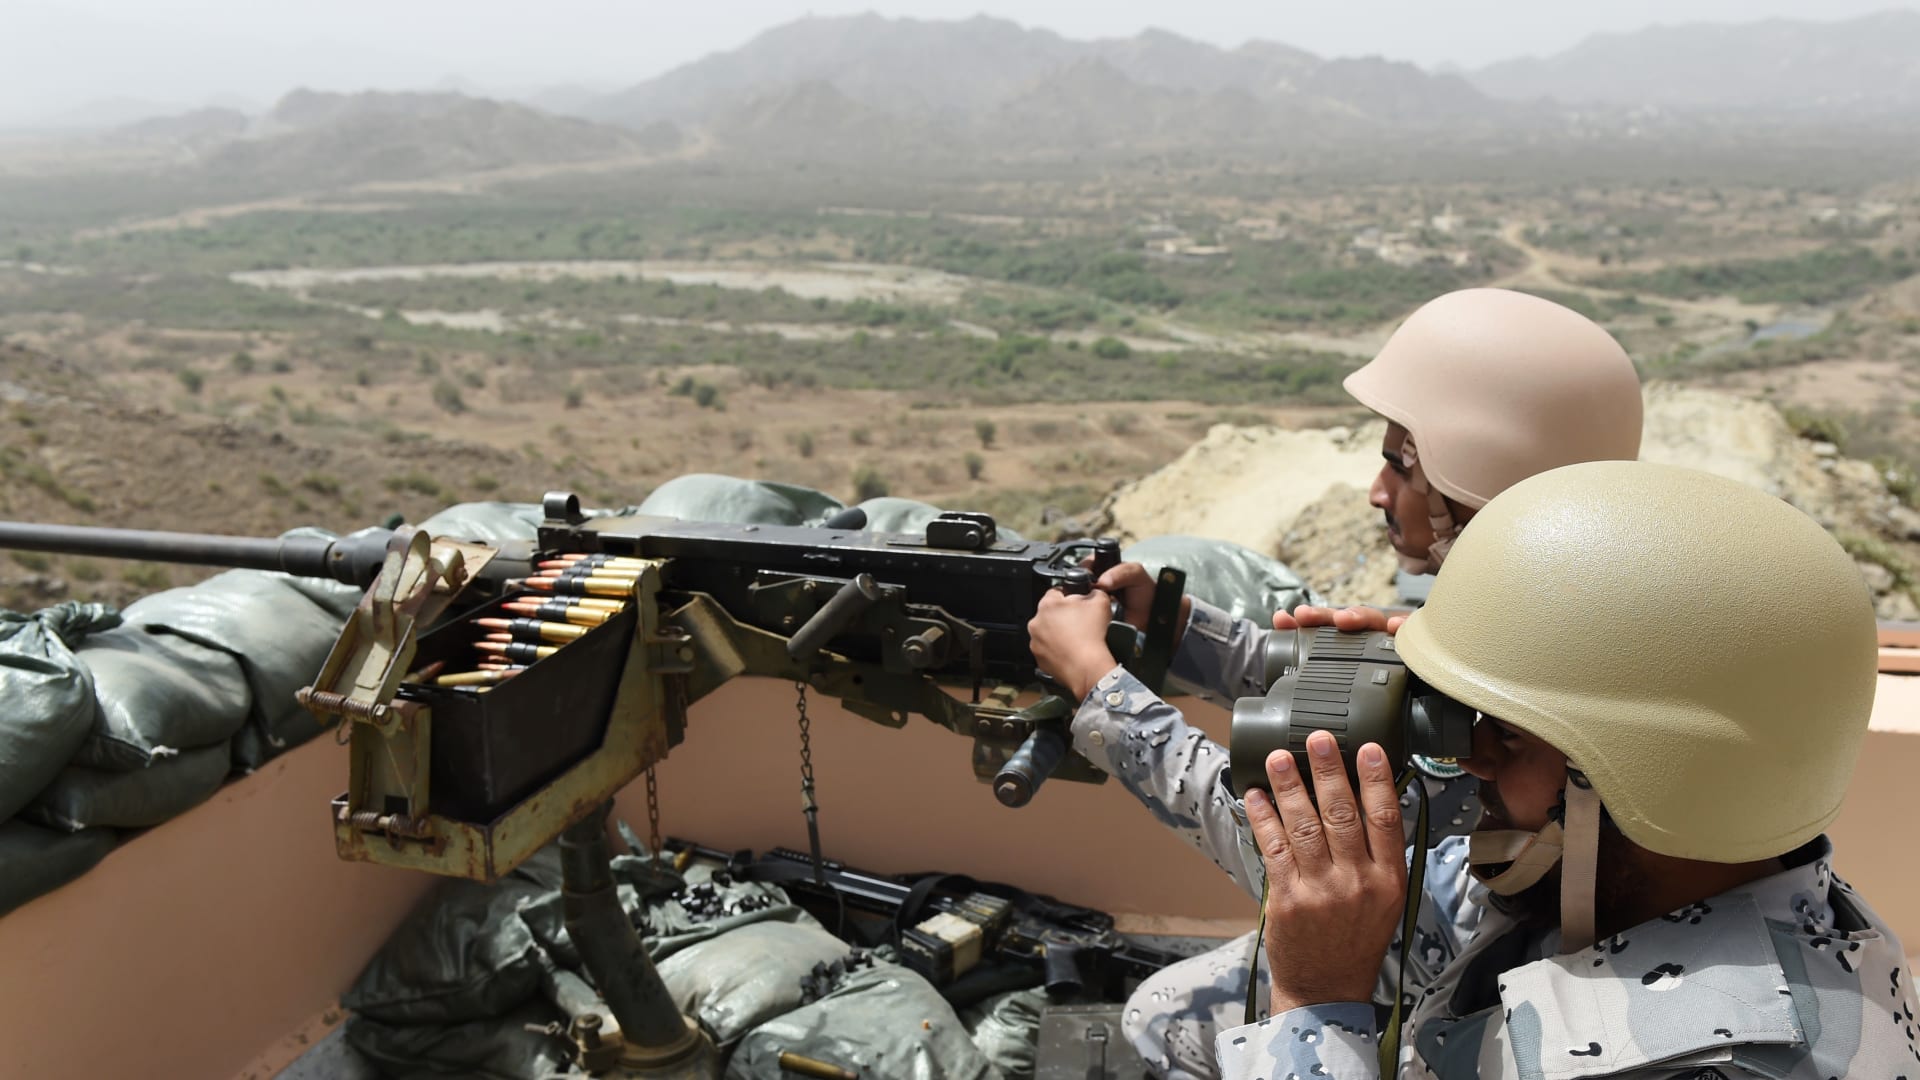 يتمركز أفراد من حرس الحدود السعودي في نقطة مراقبة على الحدود السعودية اليمنية، في جنوب غرب المملكة العربية السعودية، في 9 أبريل 2015.